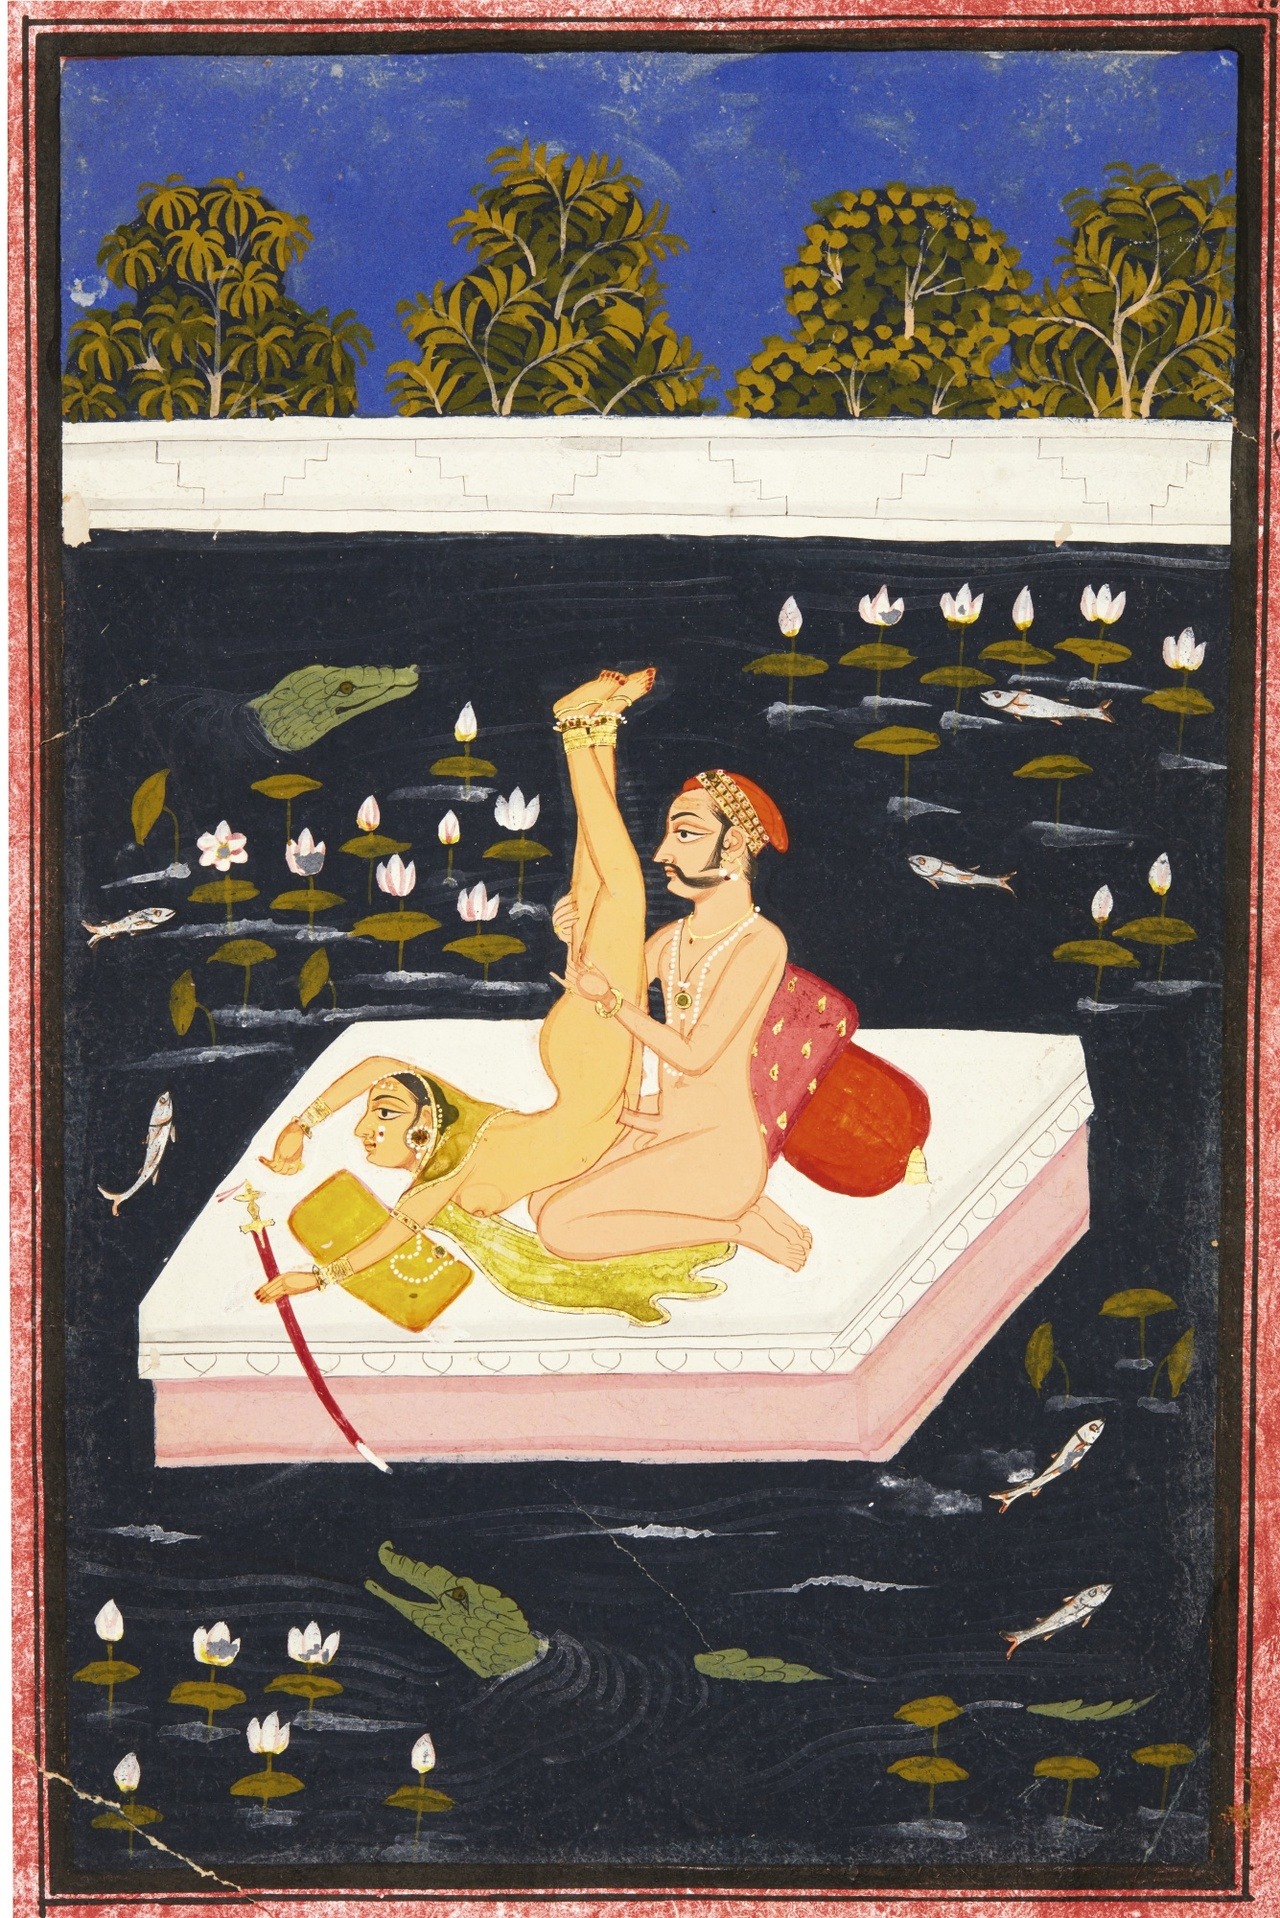 India, 18th century